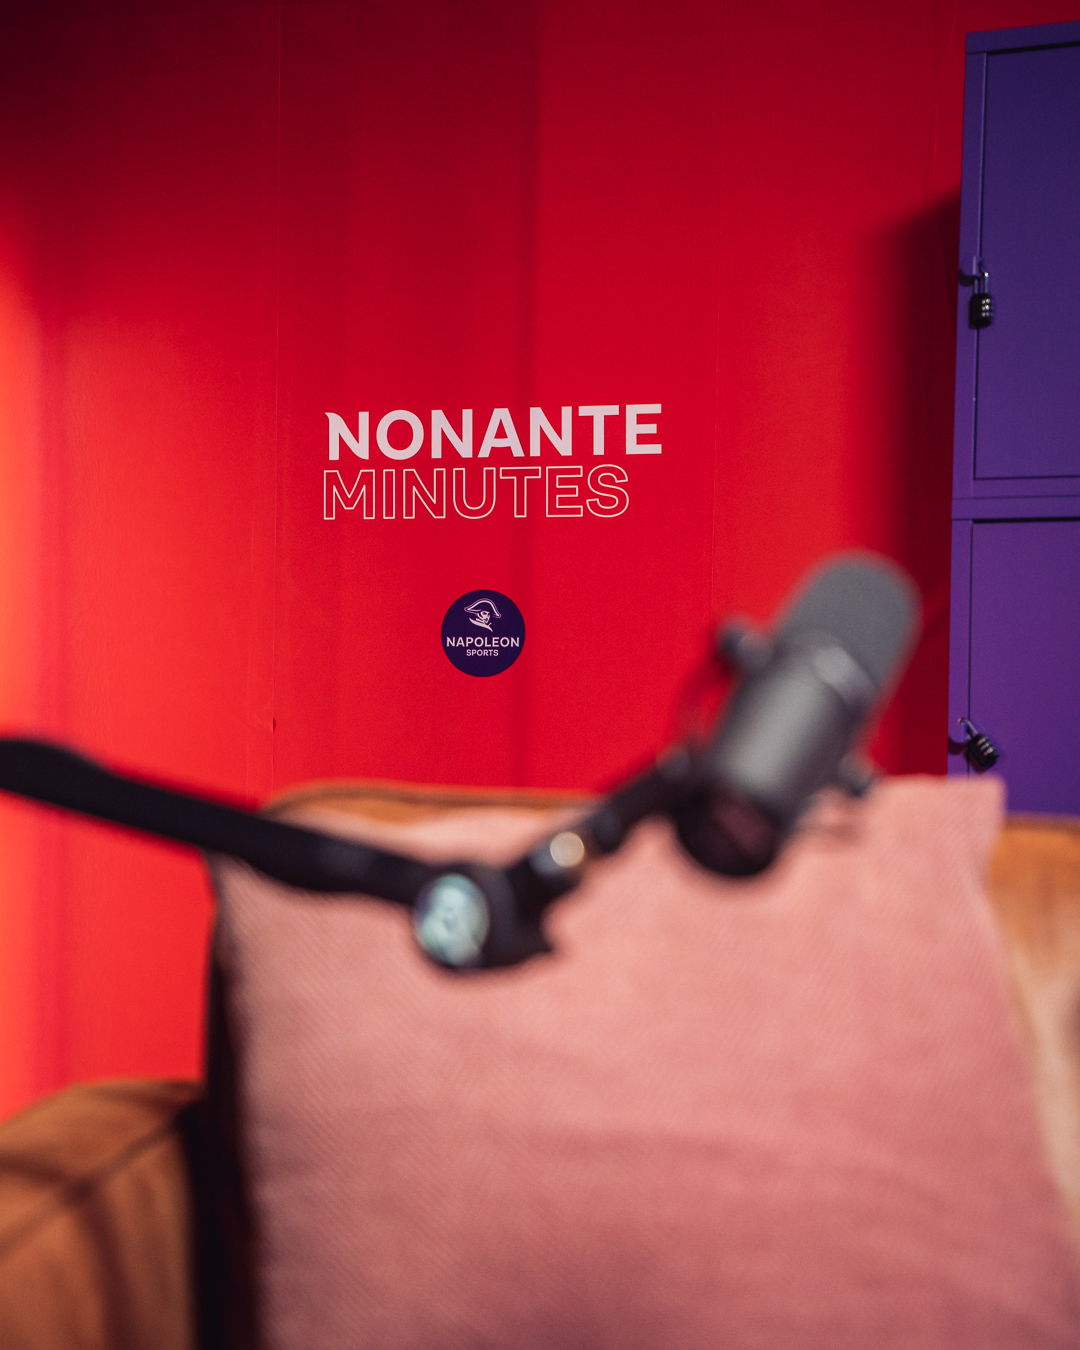 ‘Nonantes Minutes’ : RMB & Napoleon lancent un podcast foot totalement conçu par SLICE